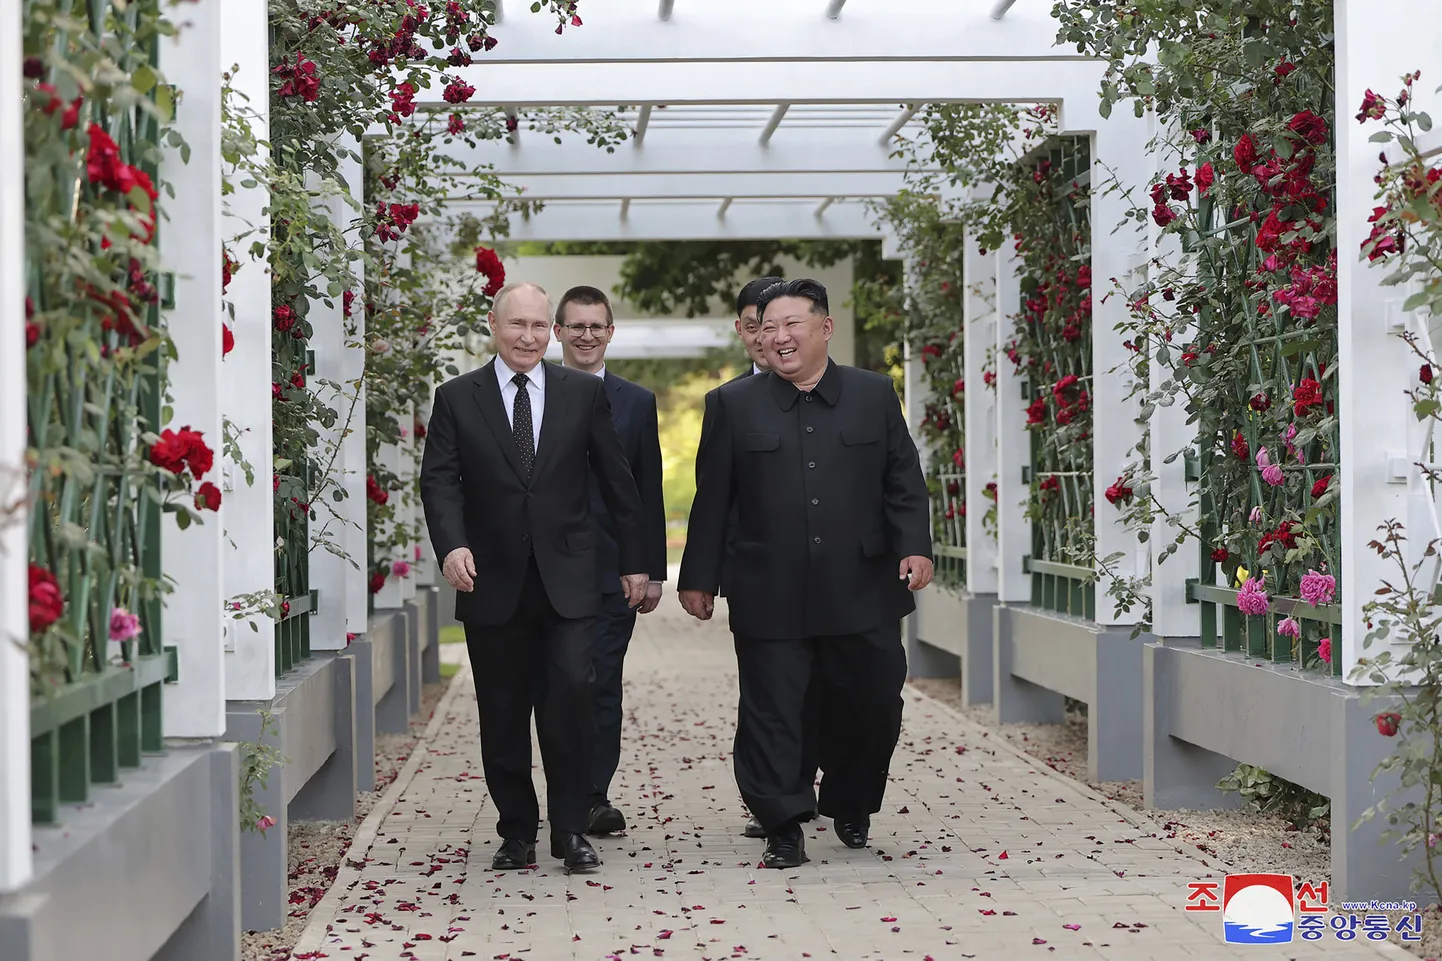 Venemaa autoritaarne president Vladimir Putin ja Põhja-Korea diktaator Kim Jong-un jalutasid eelmisel nädalal Pyongyangis Kumsusani riikliku külalistemaja aias.